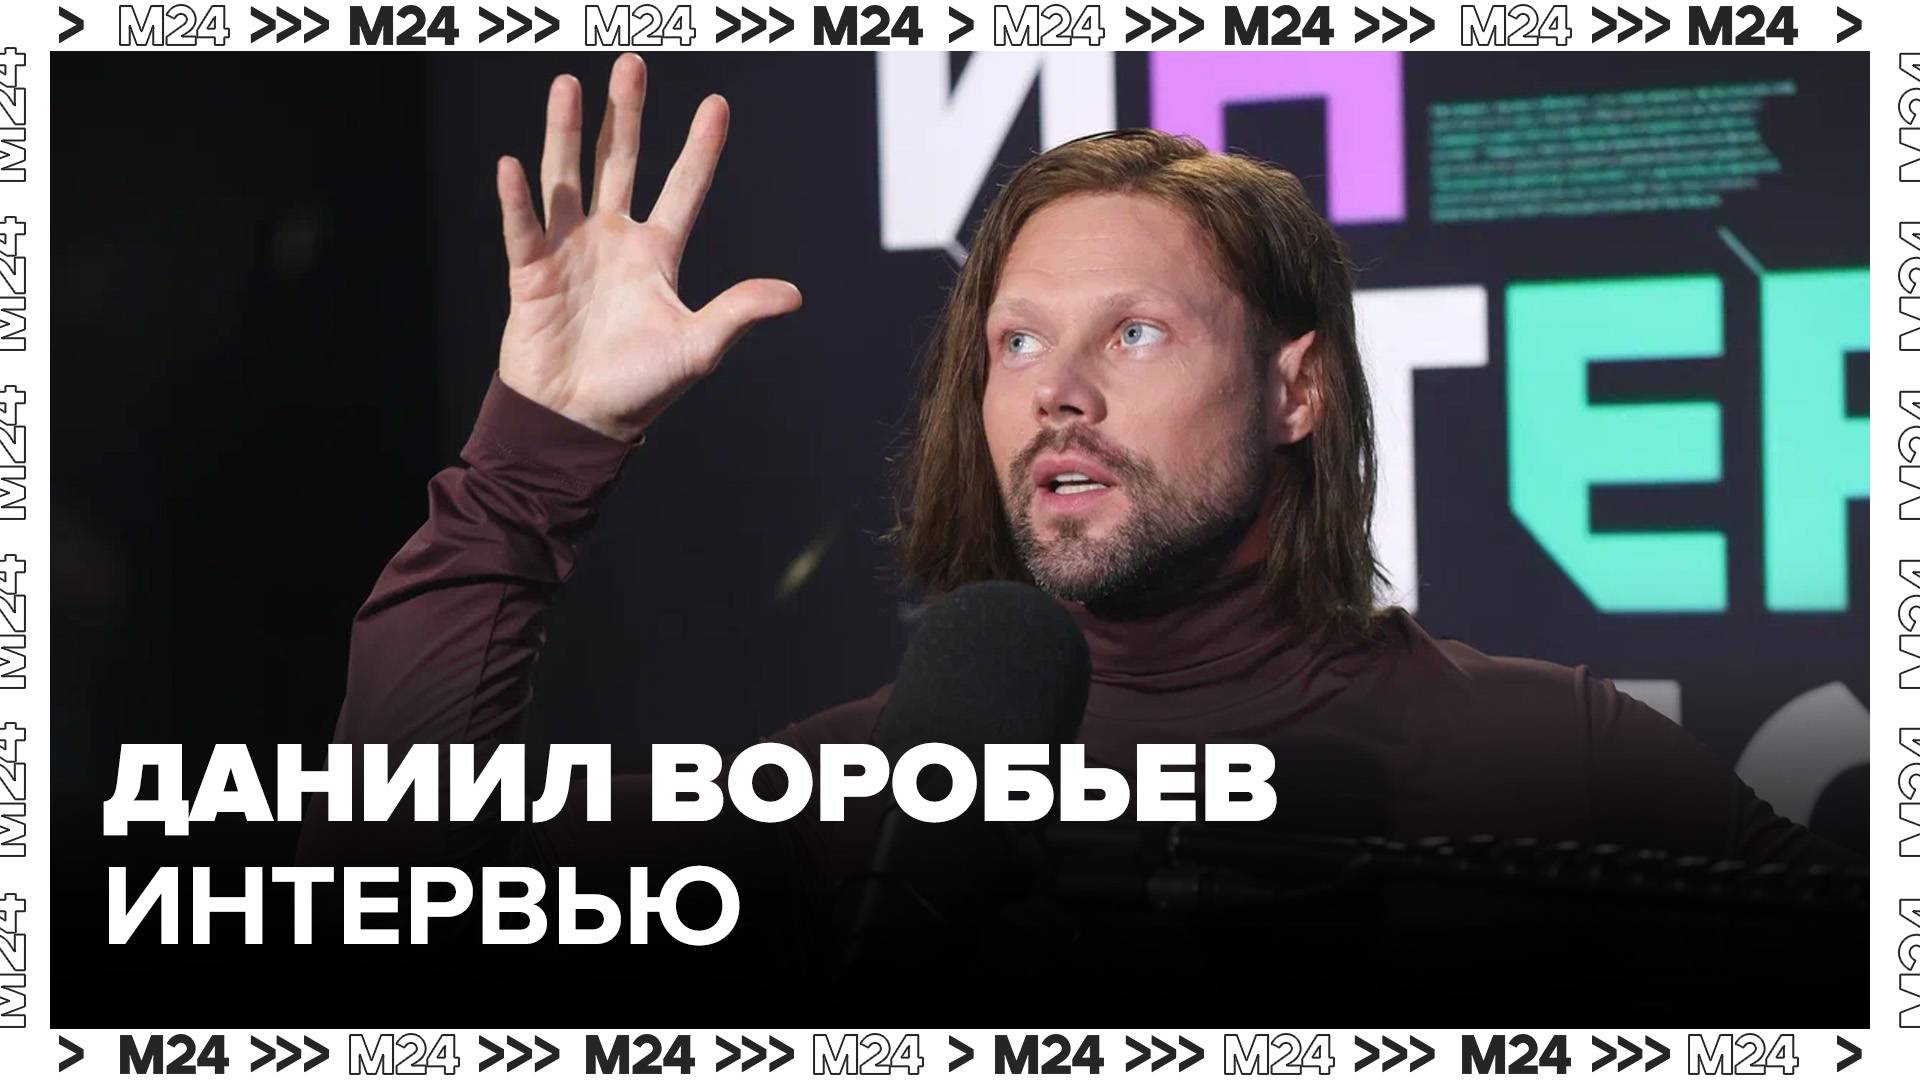 Даниил Воробьев – об отношении к ролям в кино - Интервью Москва 24